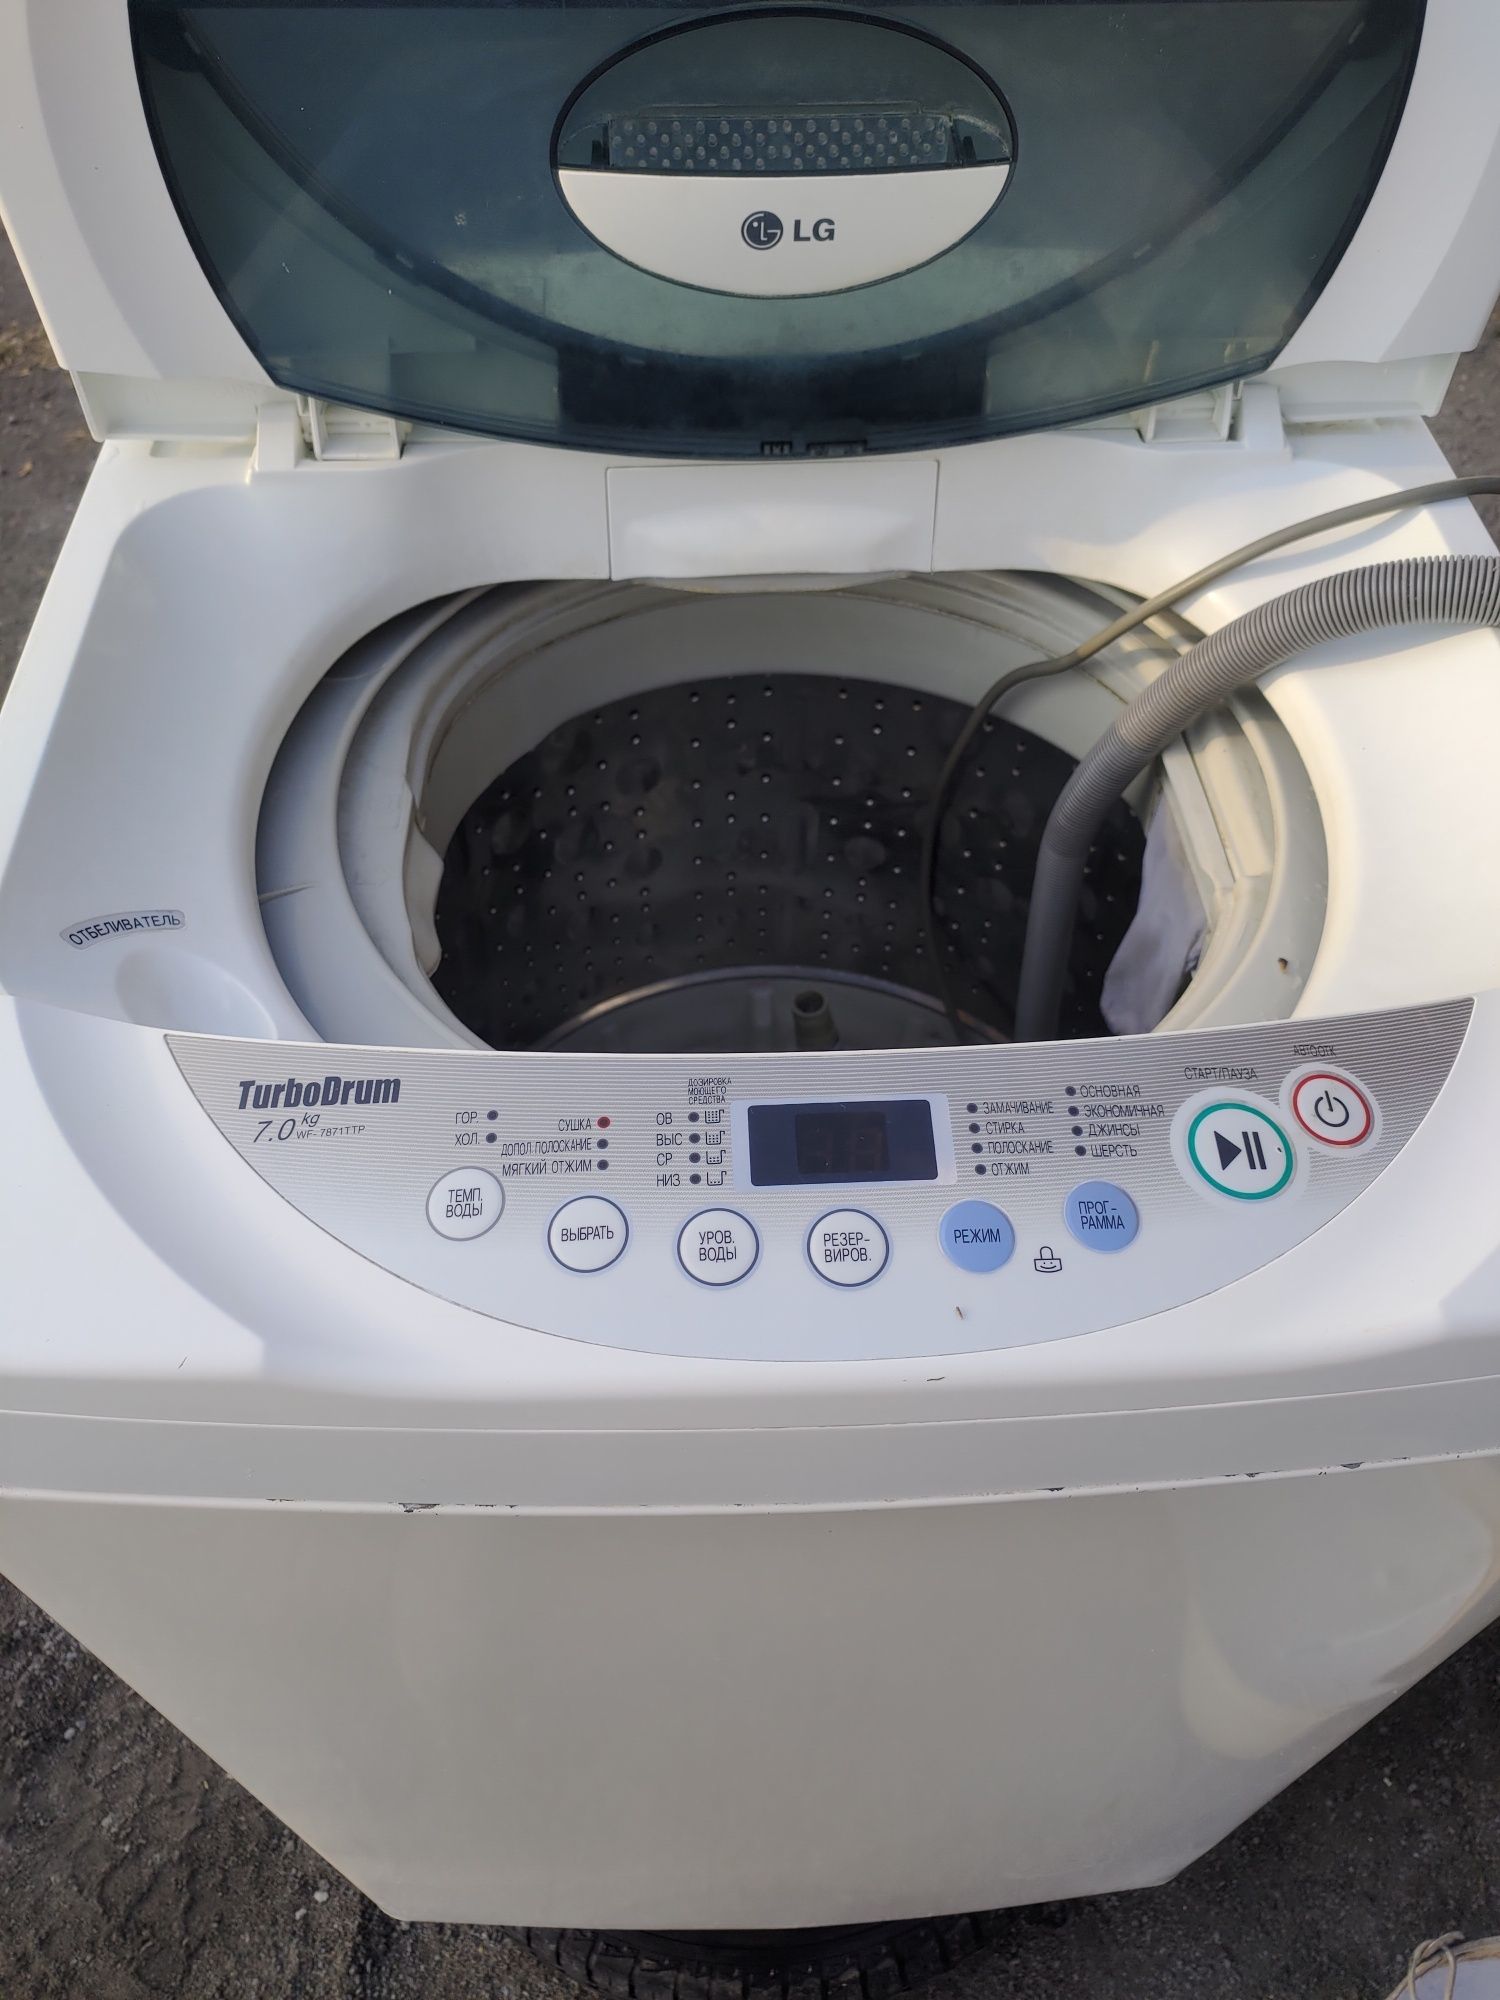 Продам стиральную машину LG Turbo Drum 7kg